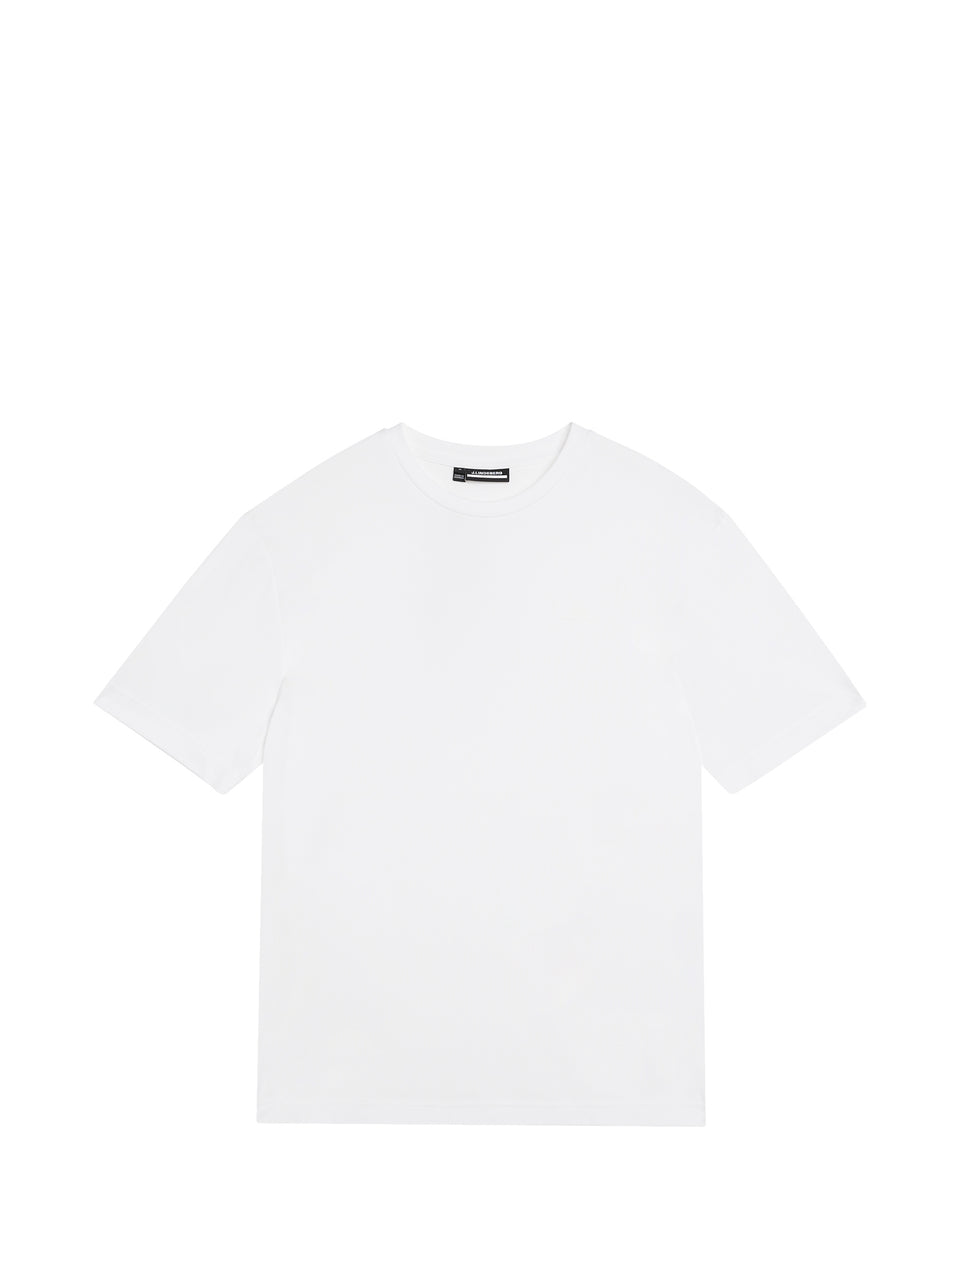 Ade T-shirt / White